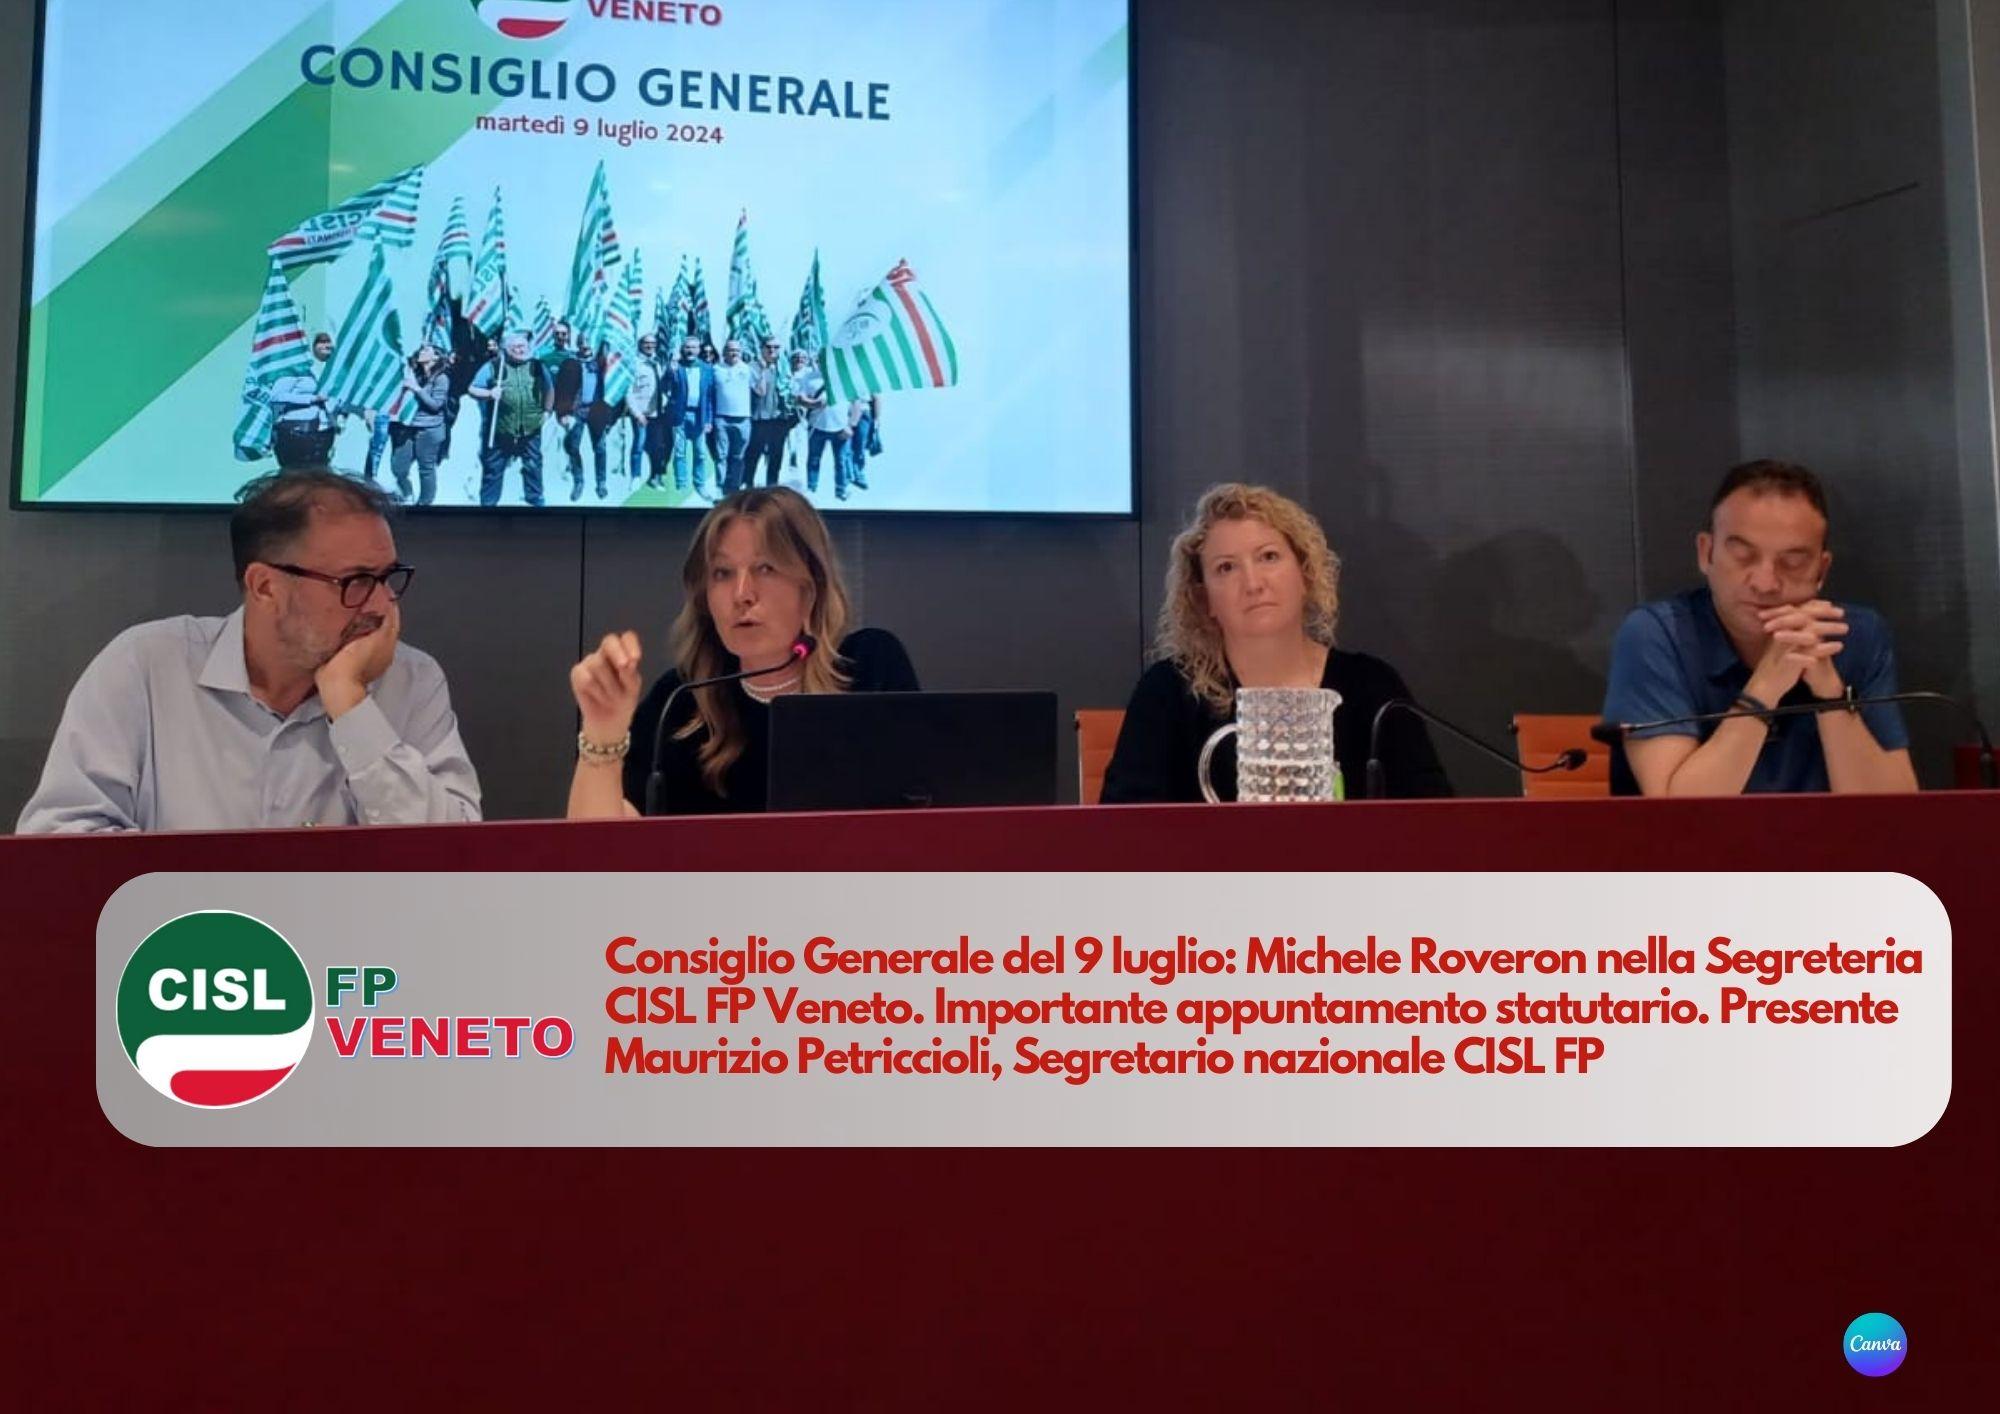 CISL FP Veneto. Consiglio Generale del 9 luglio: Michele Roveron nella Segreteria FP Veneto